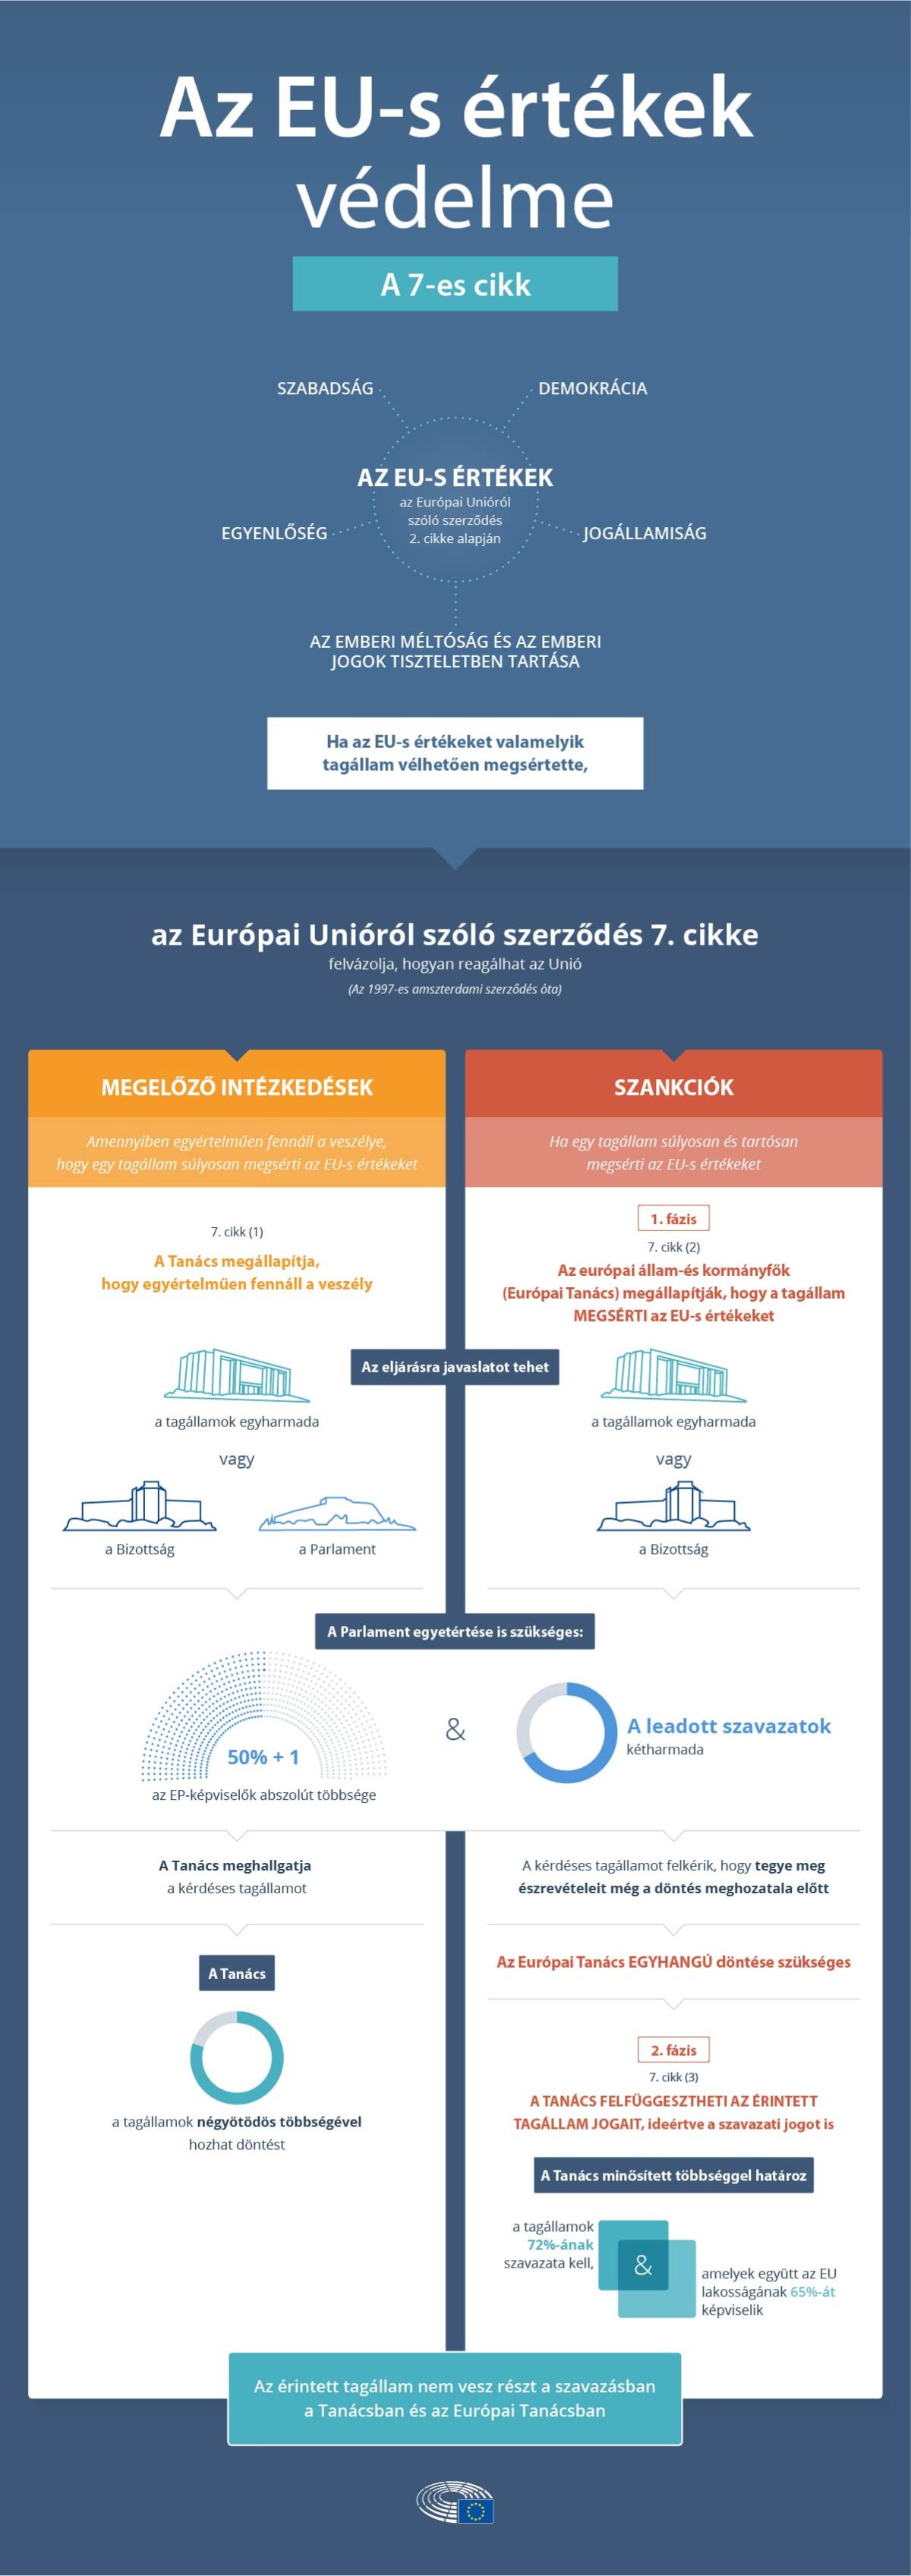 Az Európai Parlament infografikája szépen végigveszi, hogy hogyan épül fel a hetes cikkelyes eljárás. 